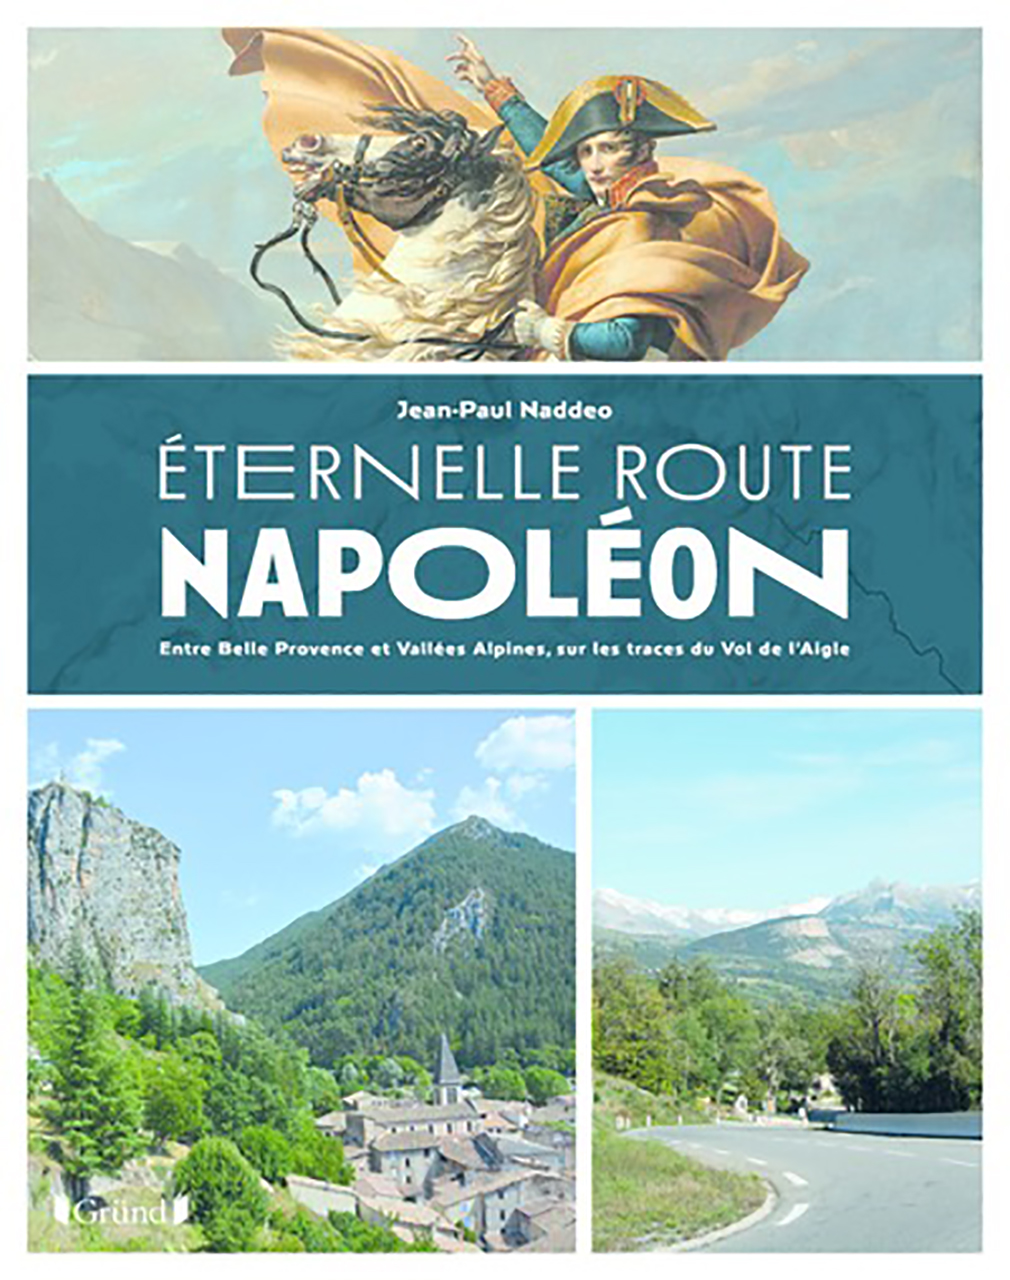 Eternelle route napoleon - entre belle proven